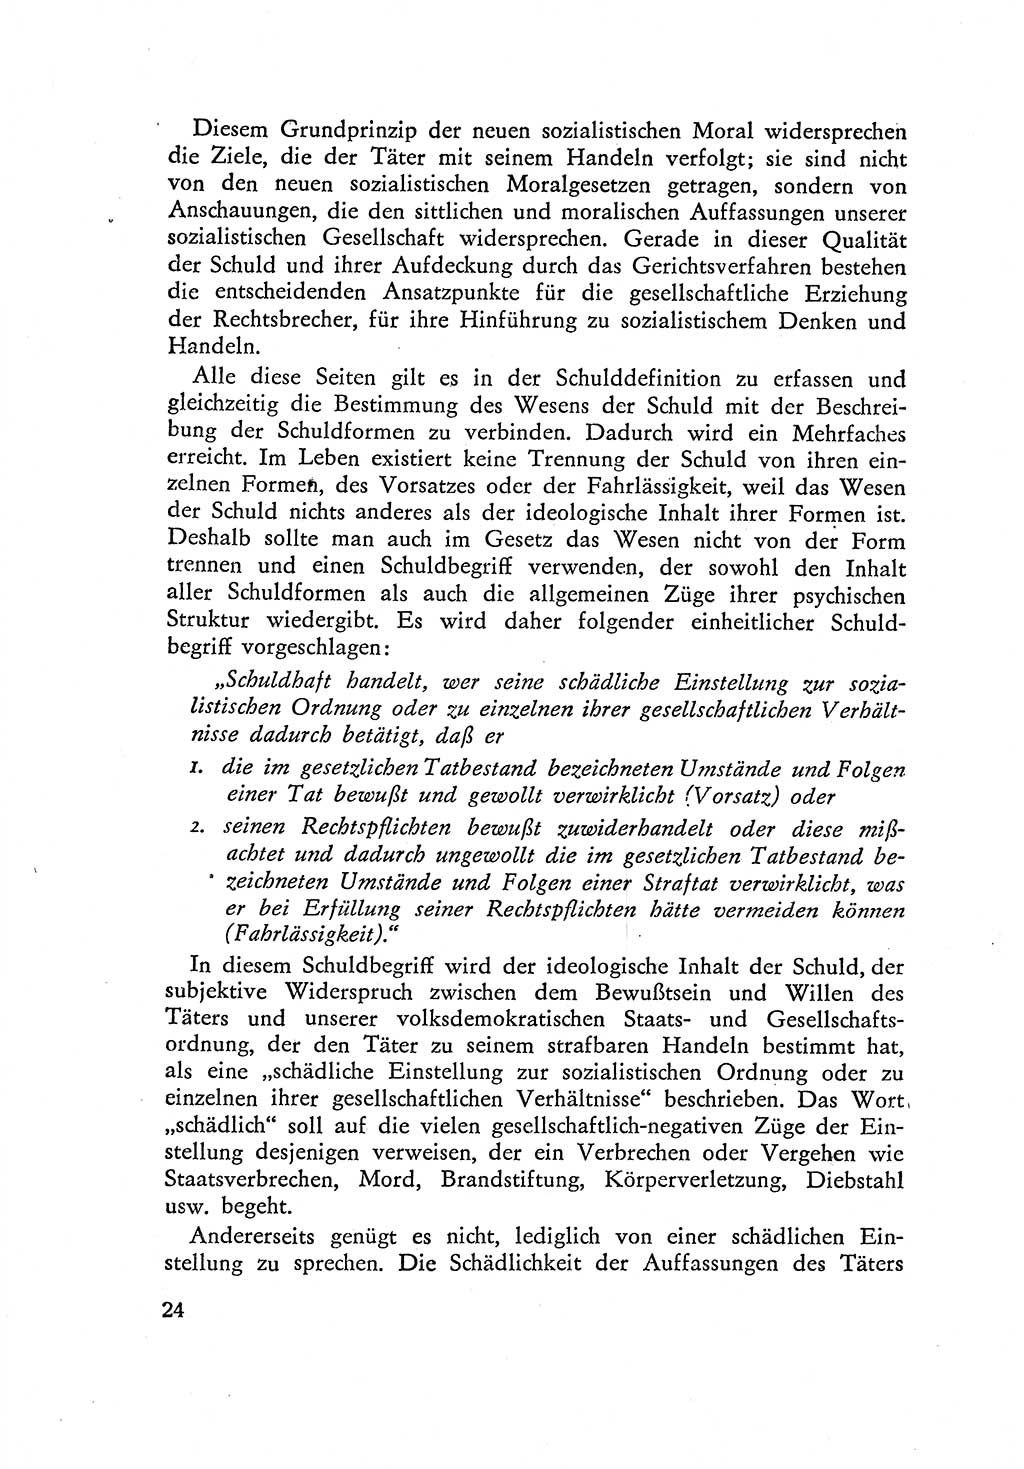 Beiträge zum Strafrecht [Deutsche Demokratische Republik (DDR)] 1959, Seite 24 (Beitr. Strafr. DDR 1959, S. 24)